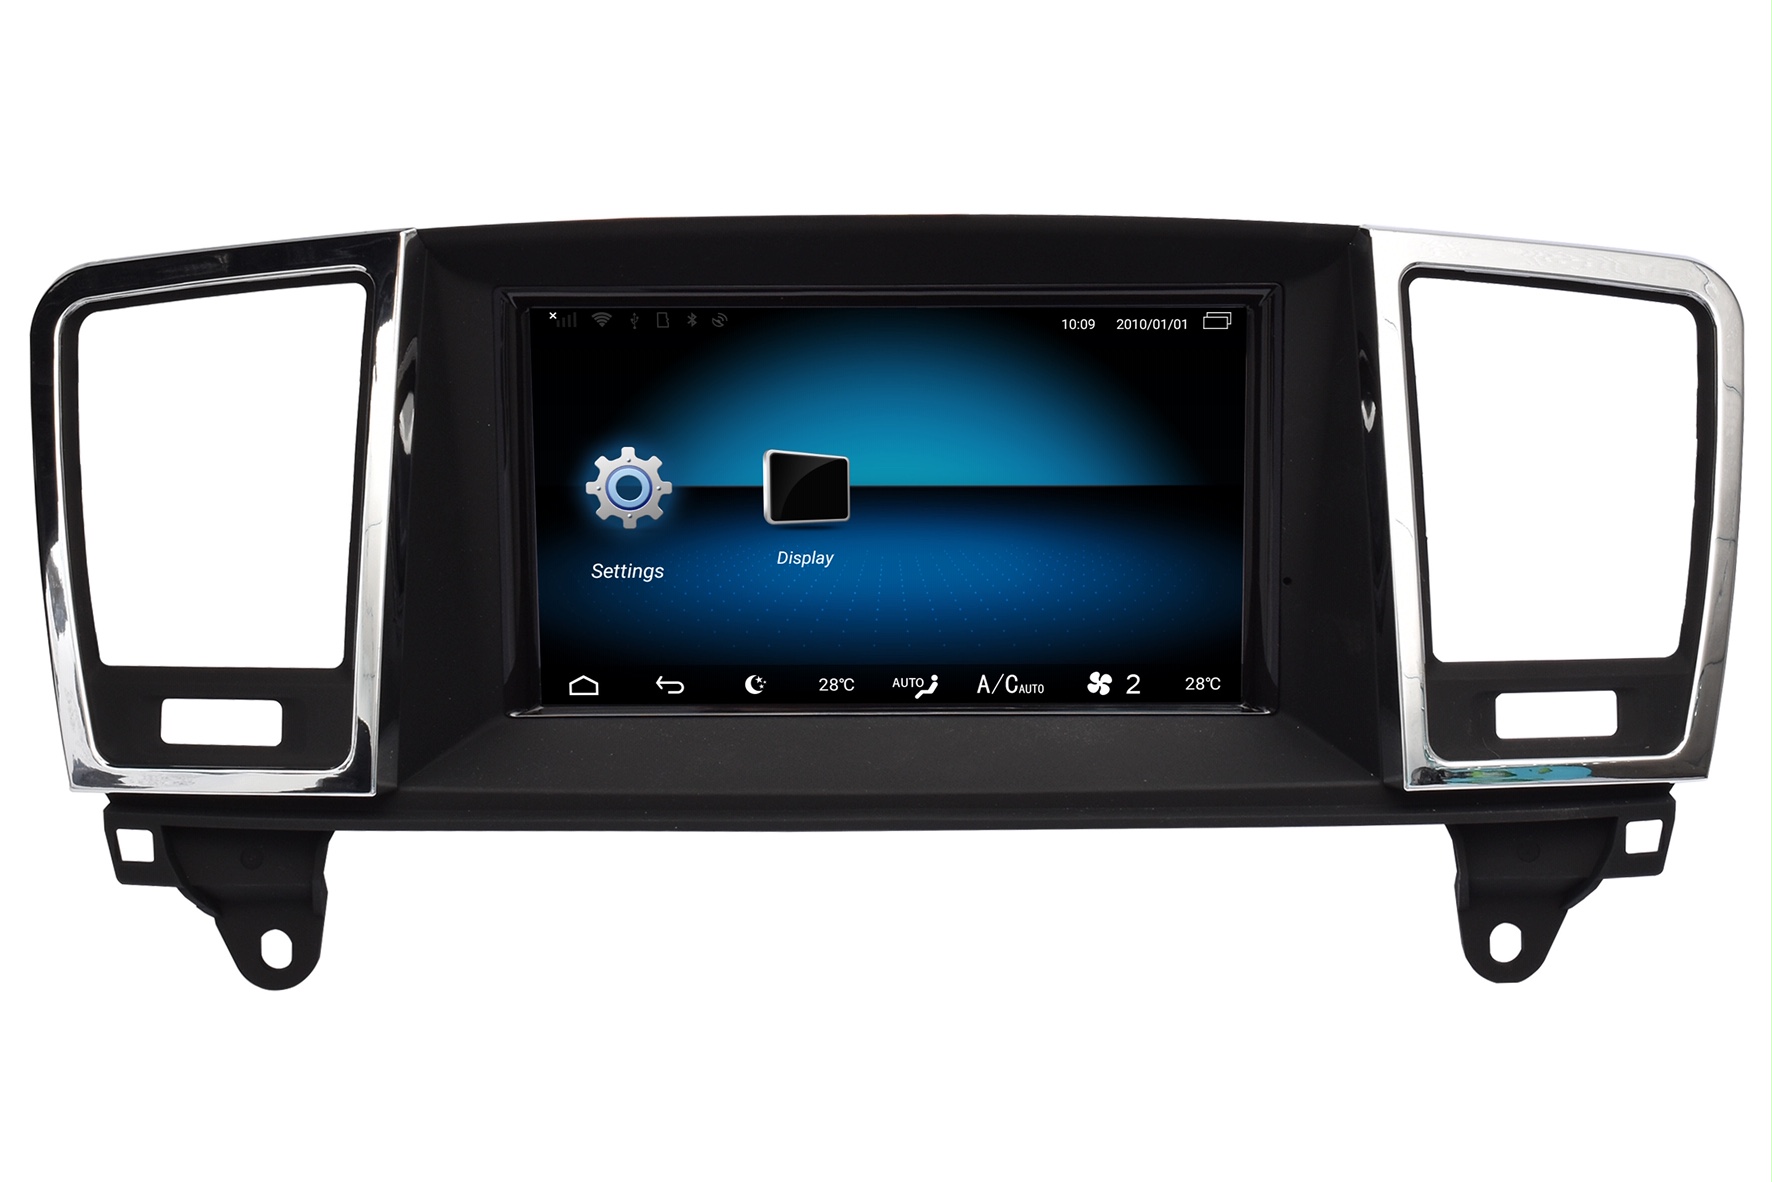 Mercedes ML navigatie vanaf 2012 carkit android 13 met apple carplay en android auto